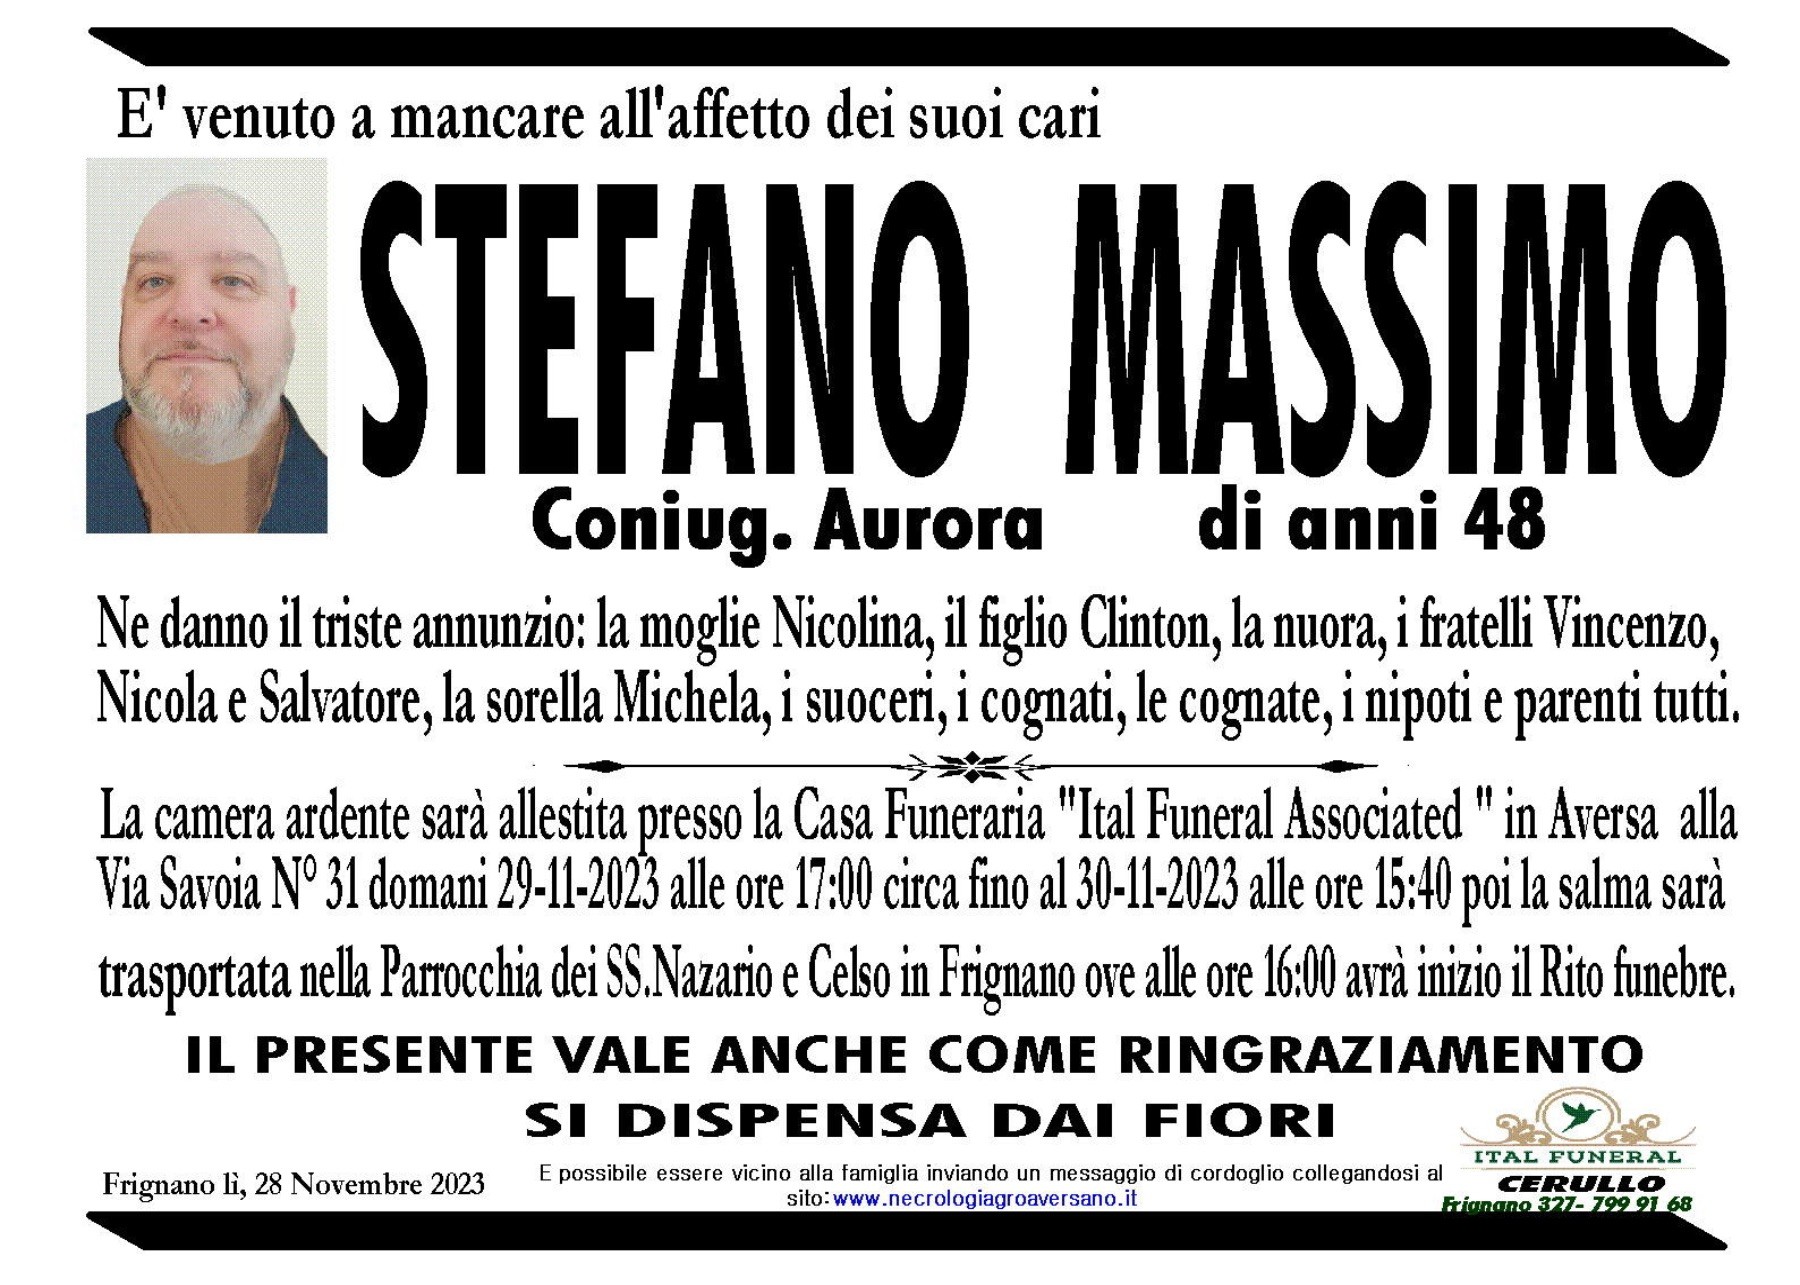 Stefano Massimo